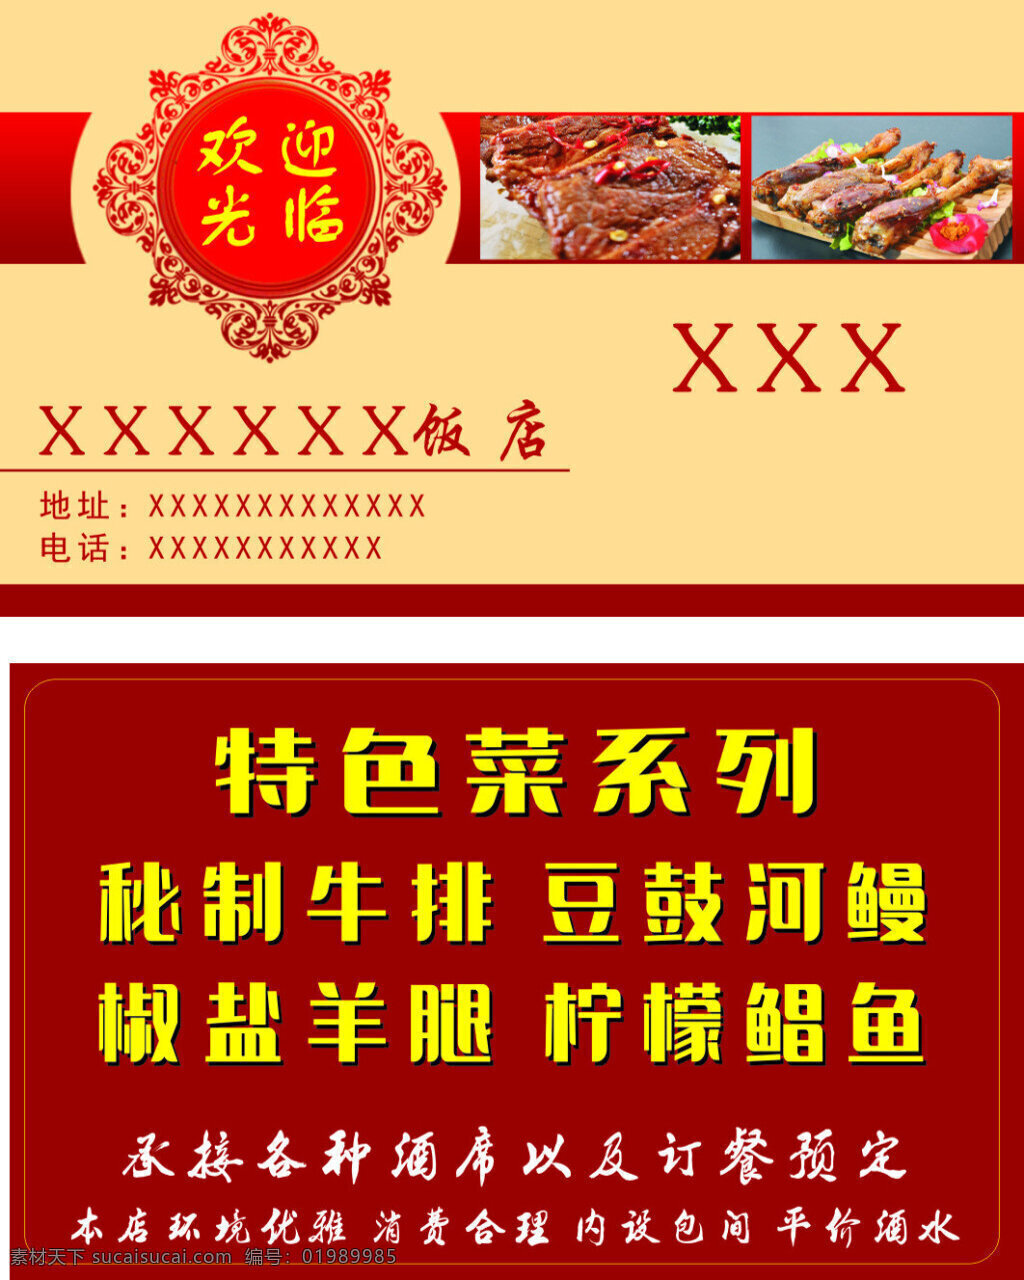 中国 风 饭店 名片设计 名片 饭店名片 卡片 菜品 订餐卡